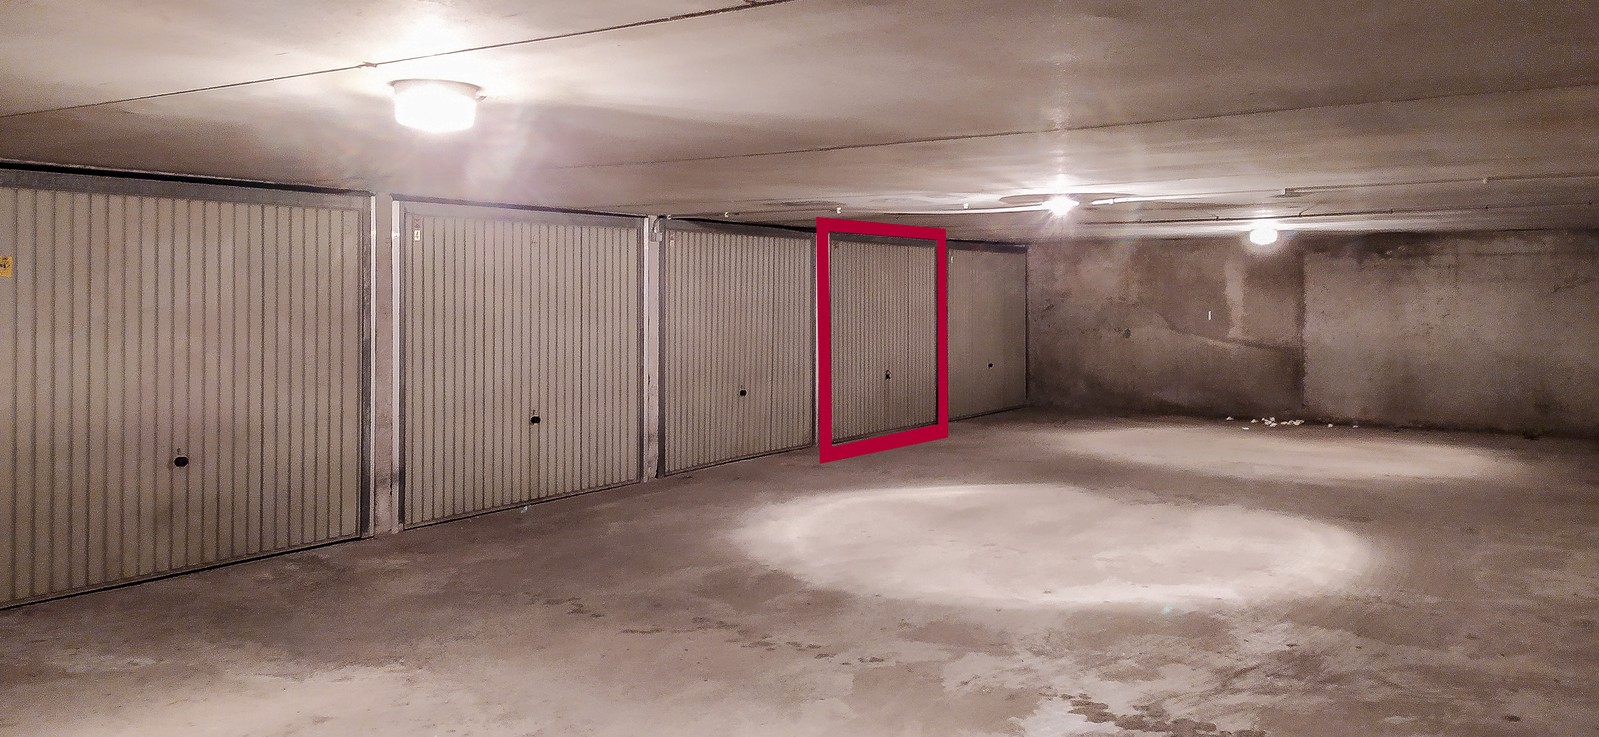 Gemakkelijk toegankelijk, centraal gelegen garagebox